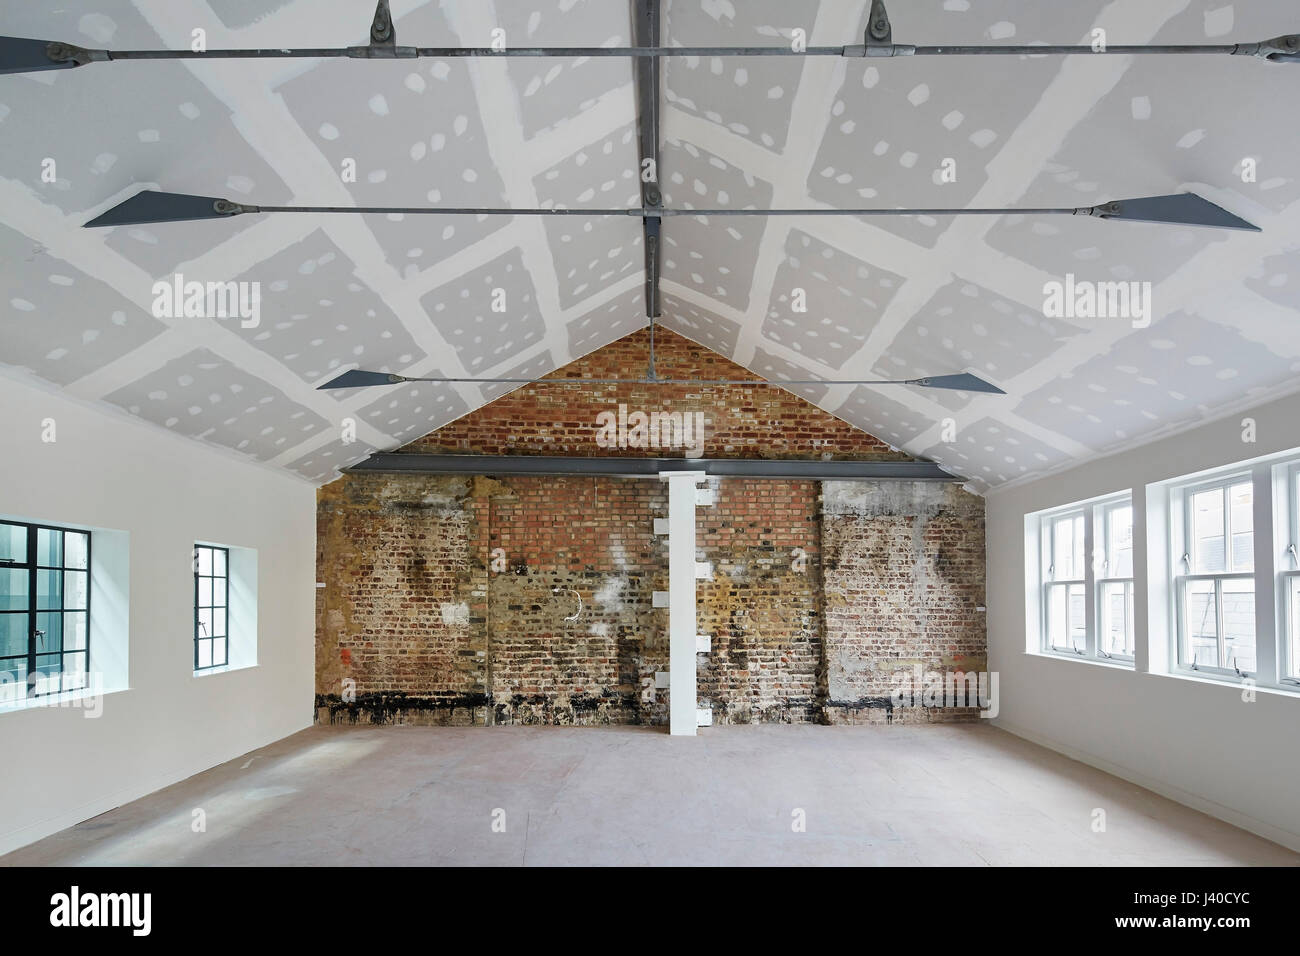 Non ammobiliato e ristrutturato attico di palazzo storico. Chancery Lane, Londra, Regno Unito. Architetto: Bennetts Associates Architects, 2015. Foto Stock